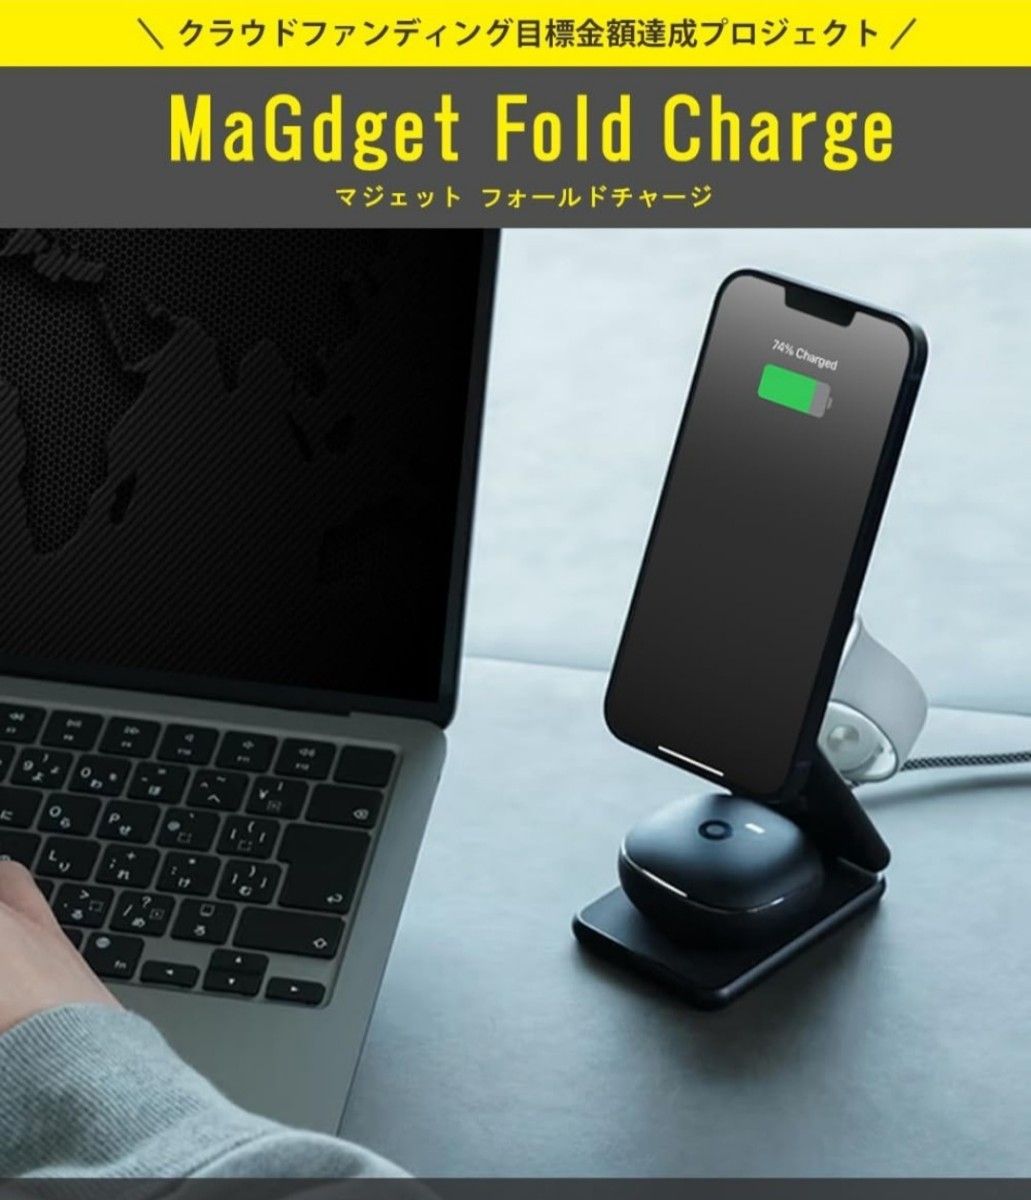 MaGdget Fold Charge/マジェット フォールドチャージ MagSafe対応 マグネット式 3in1